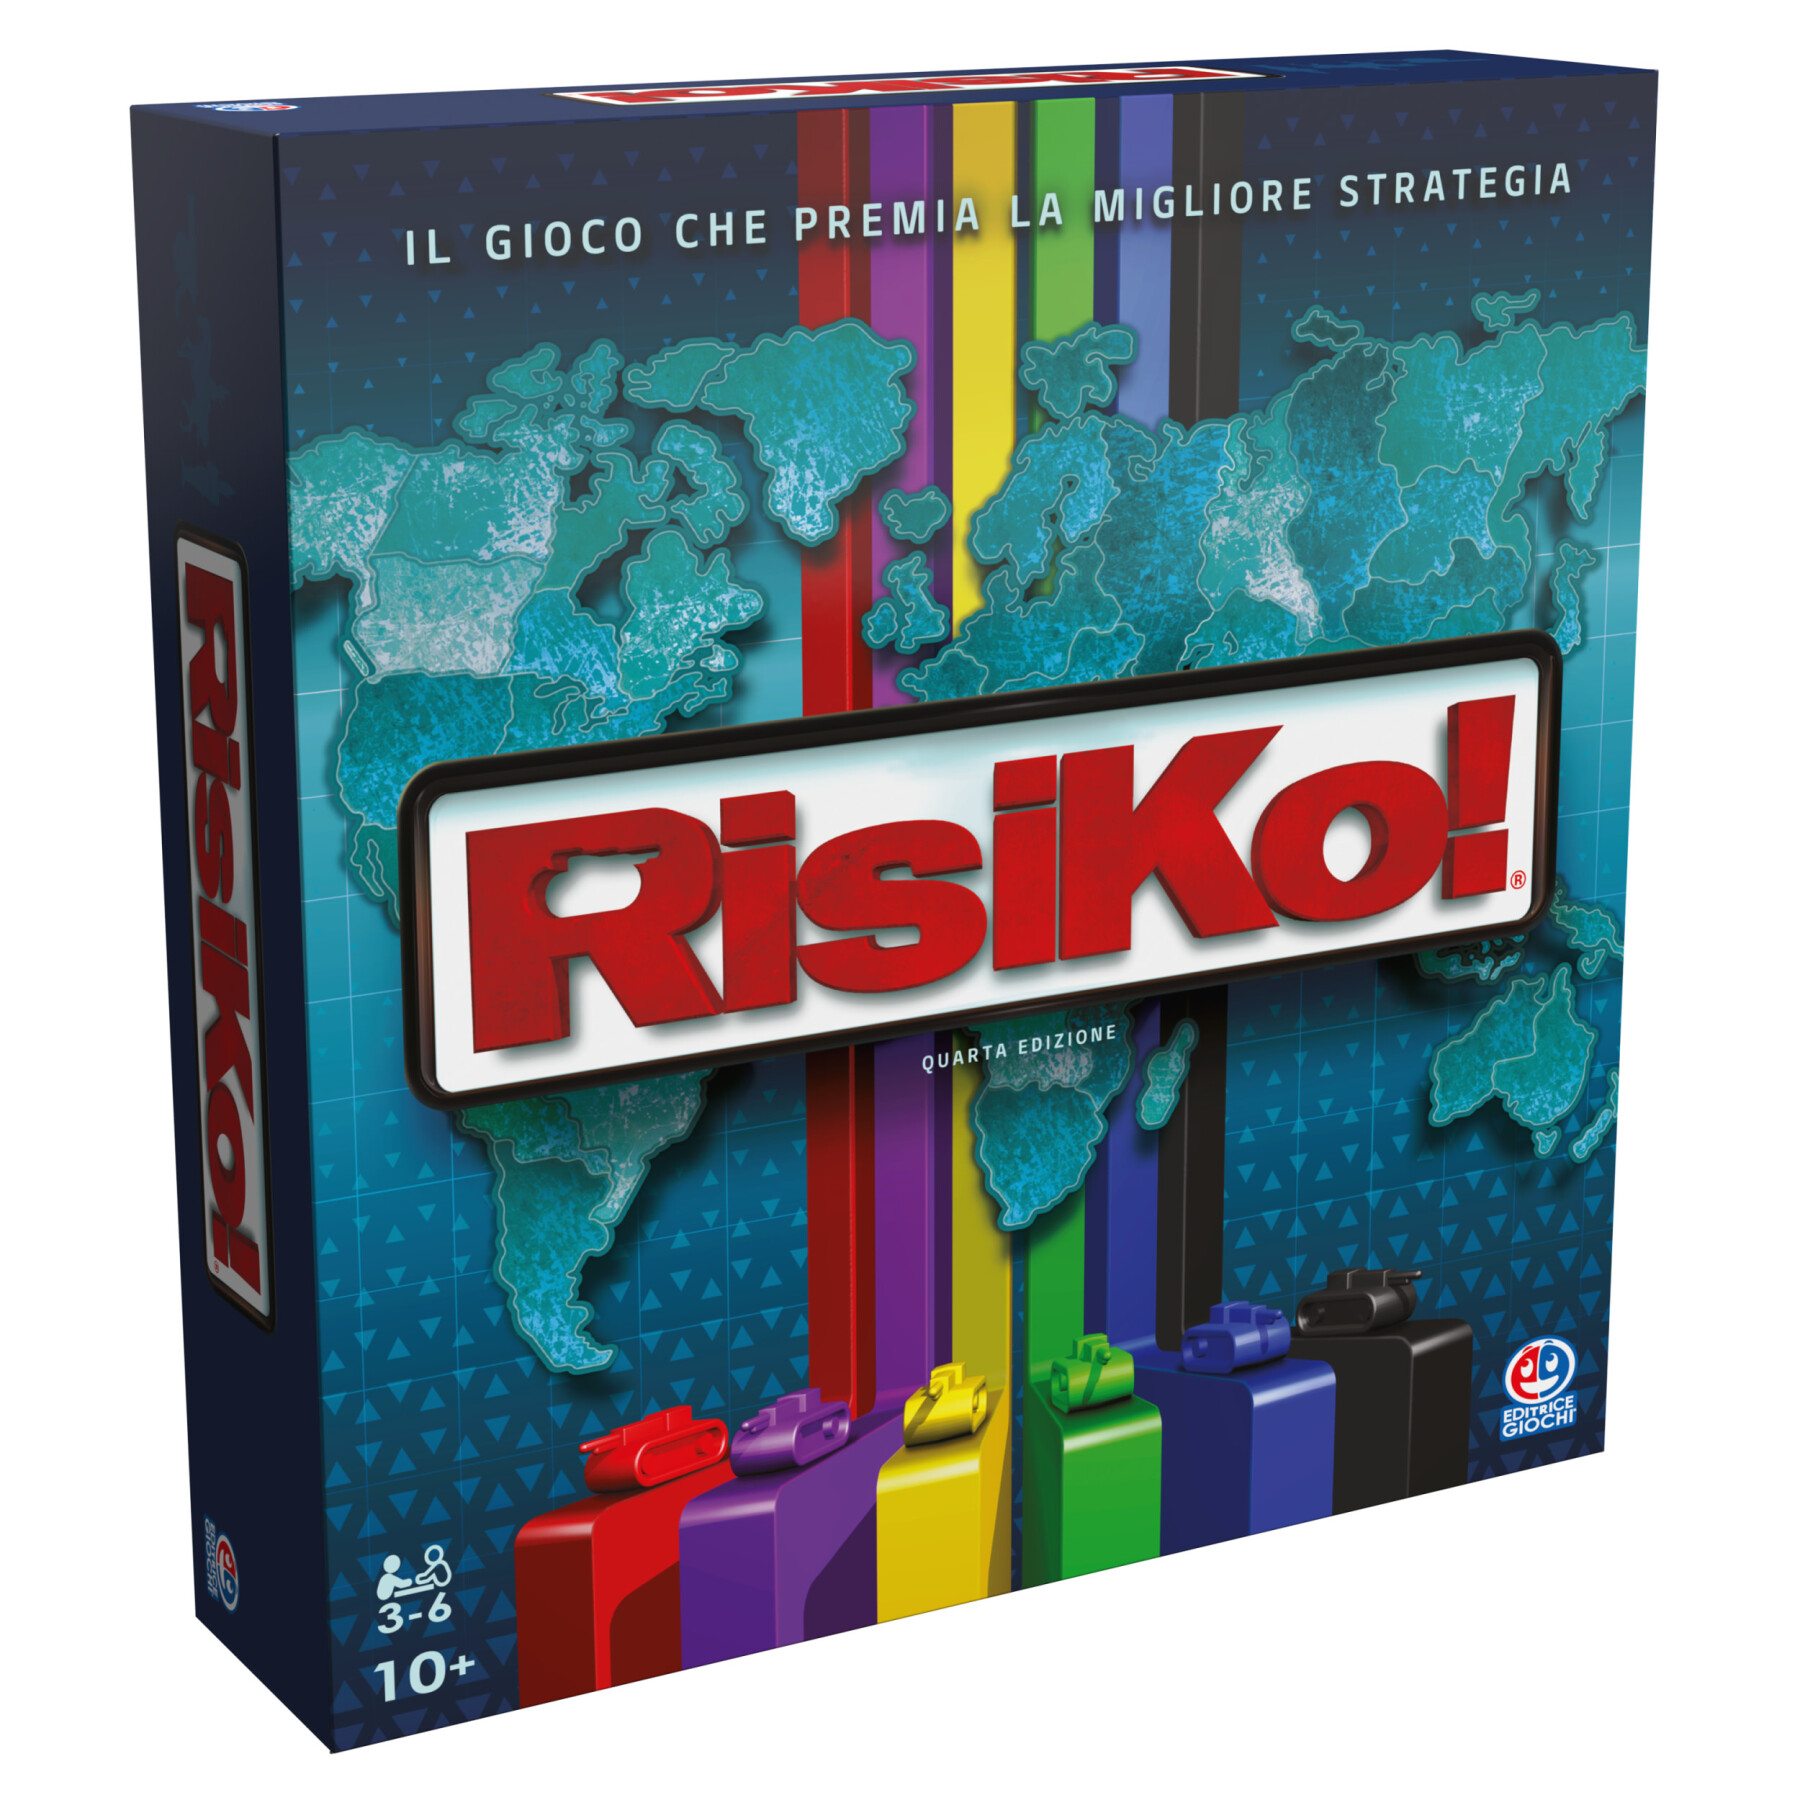 Editrice giochi, risiko!, gioco da tavola classico, giochi di società e strategia per la famiglia, dai 2 ai 4 giocatori, adatto per adulti e bambini, 10+ anni - 